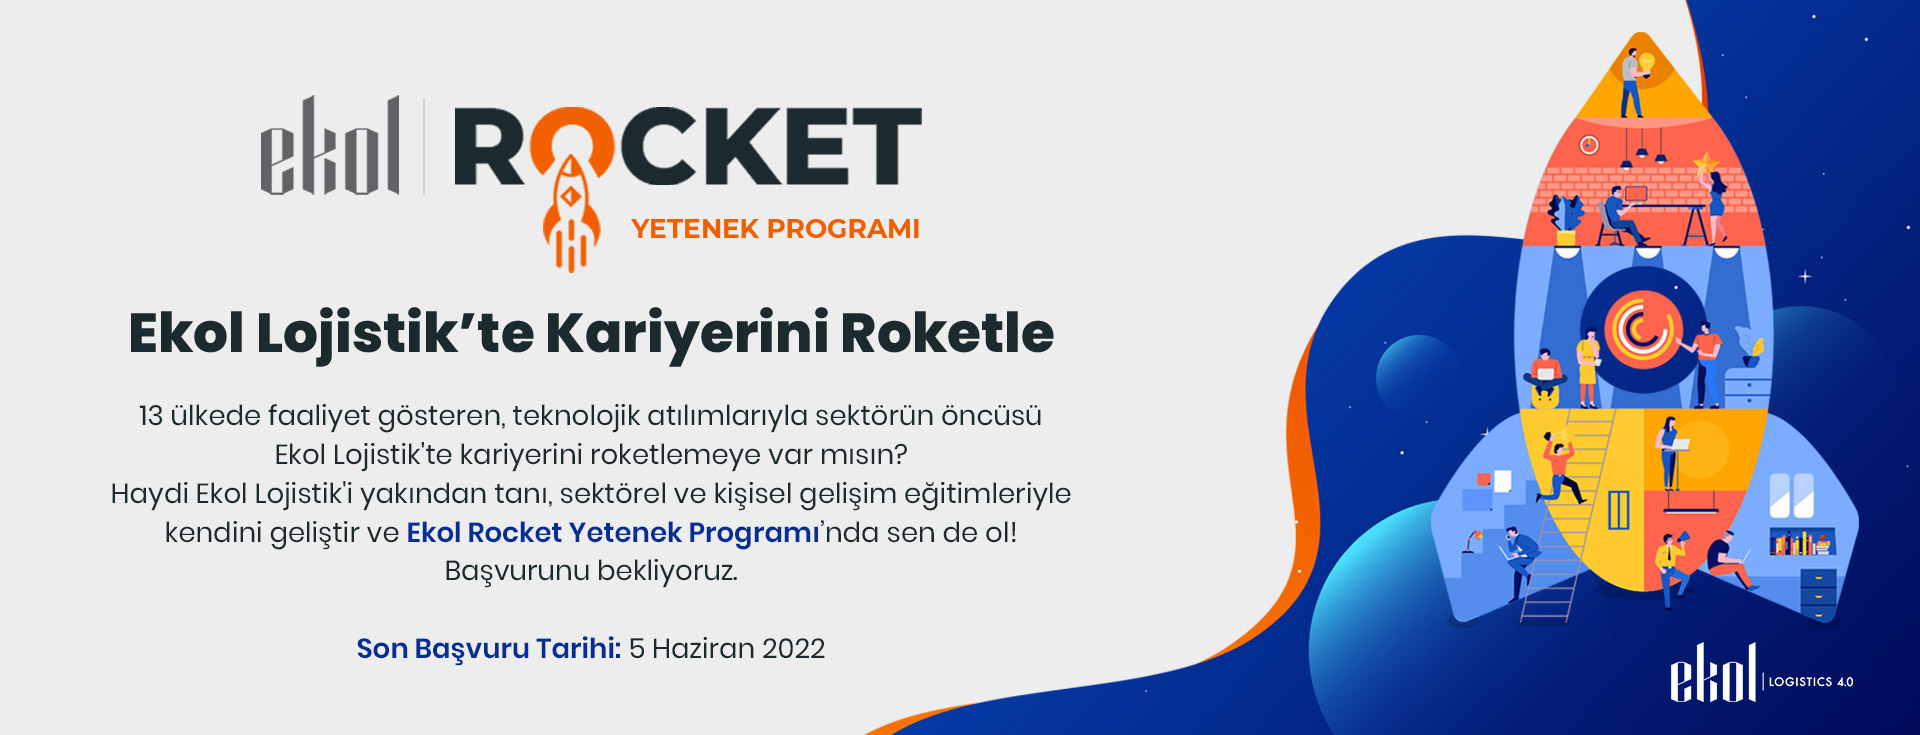 Ekol Rocket Yetenek Programı